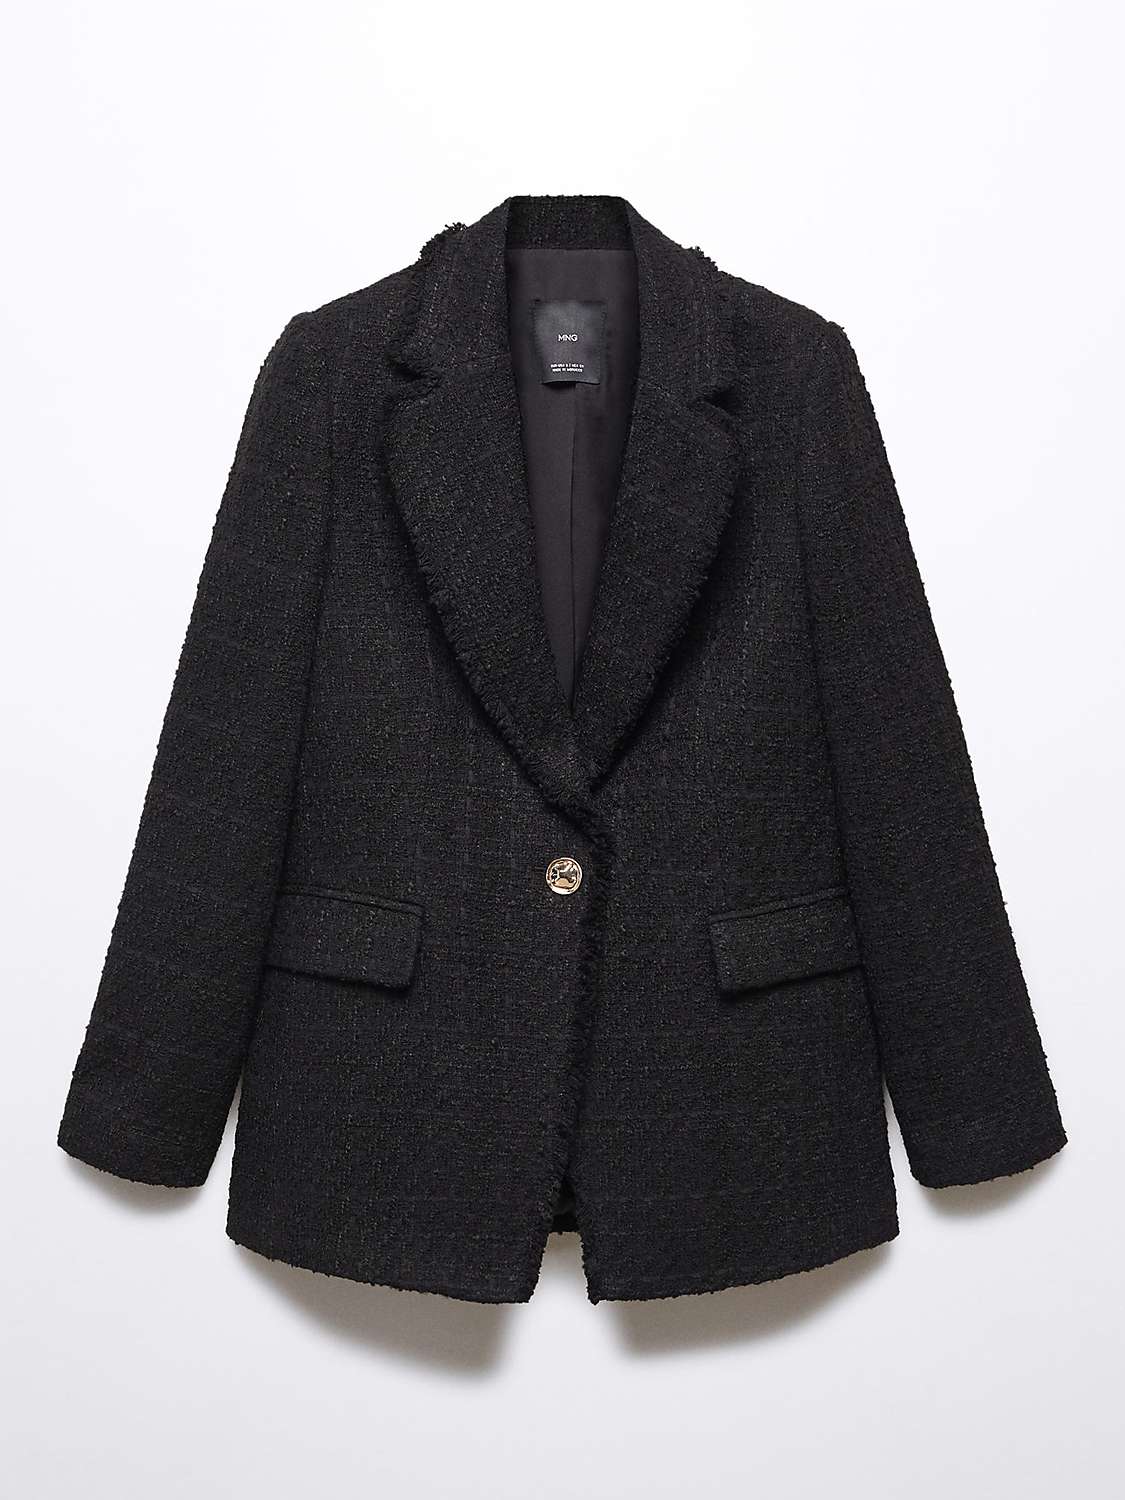 Mango Quintin Tweed Frayed Detail Blazer, Black at John Lewis & Partners